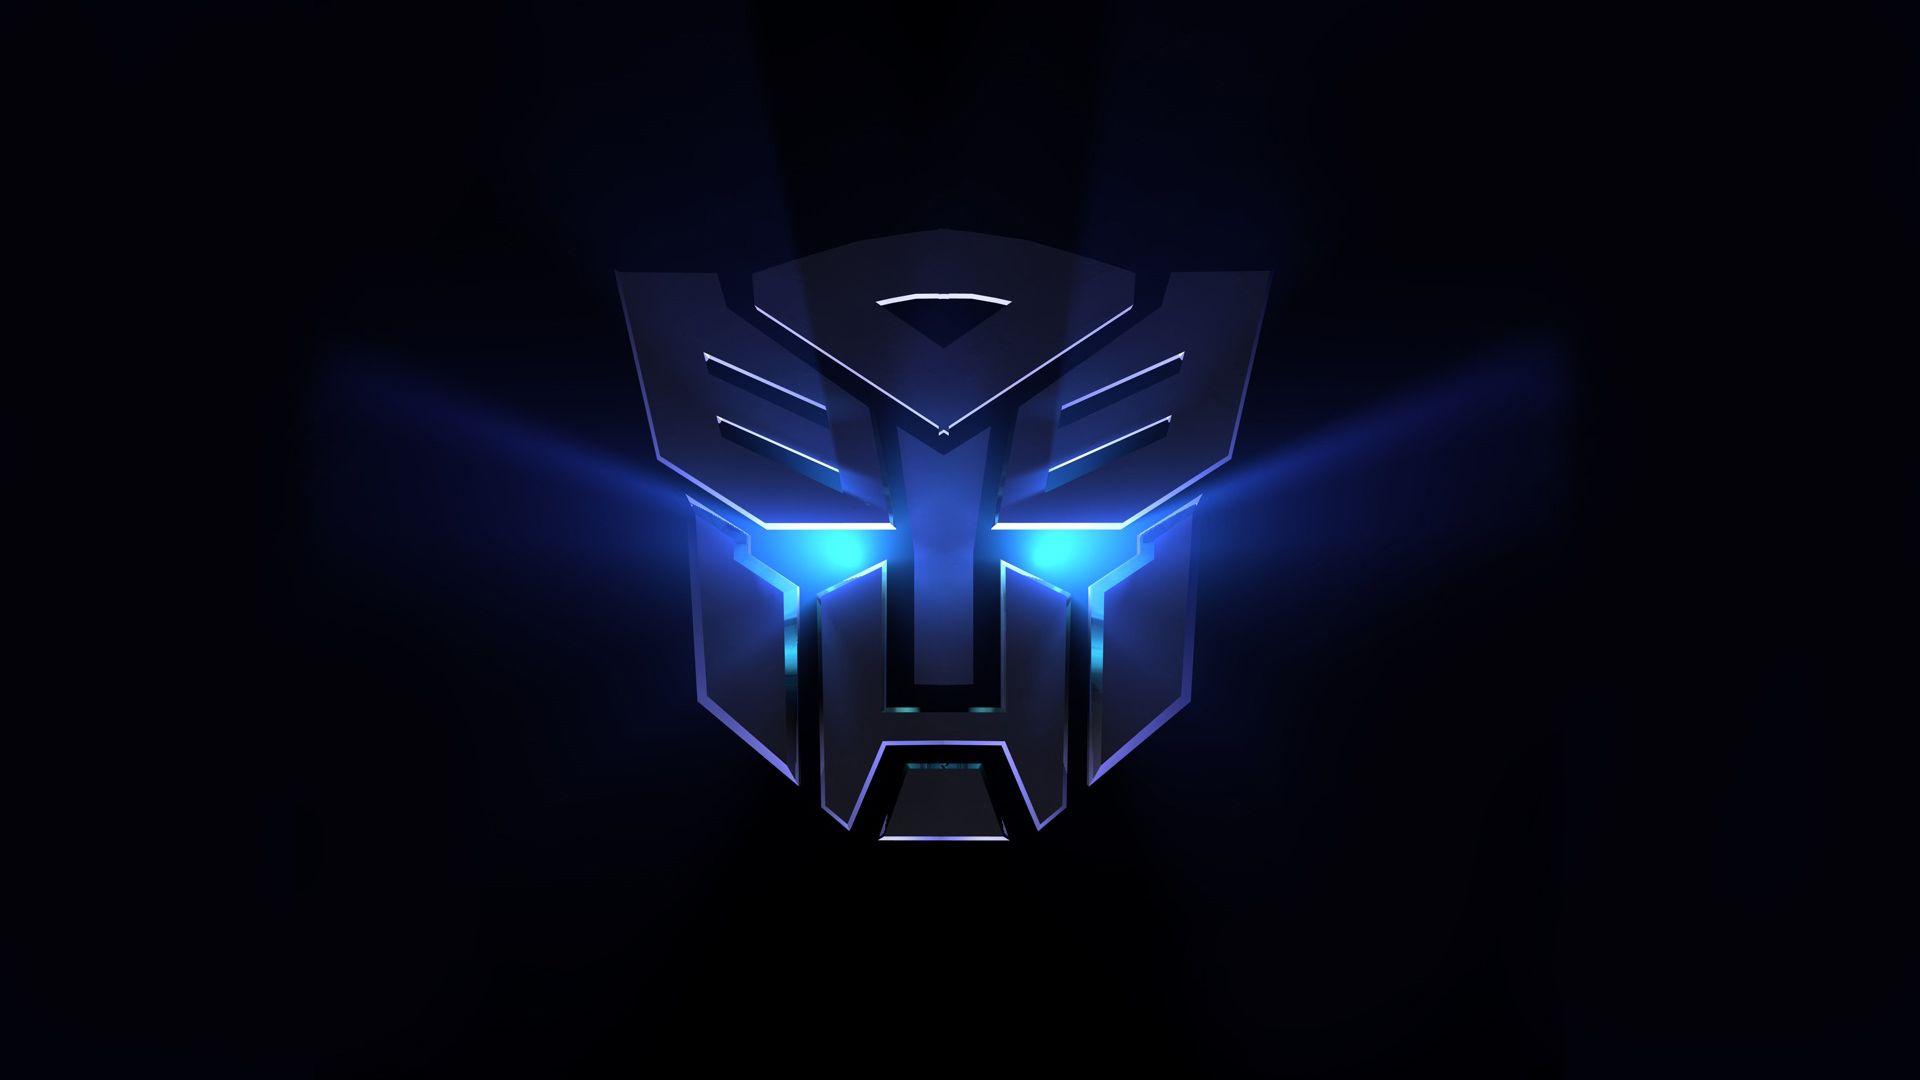 Transformers Autobot Logo free image download